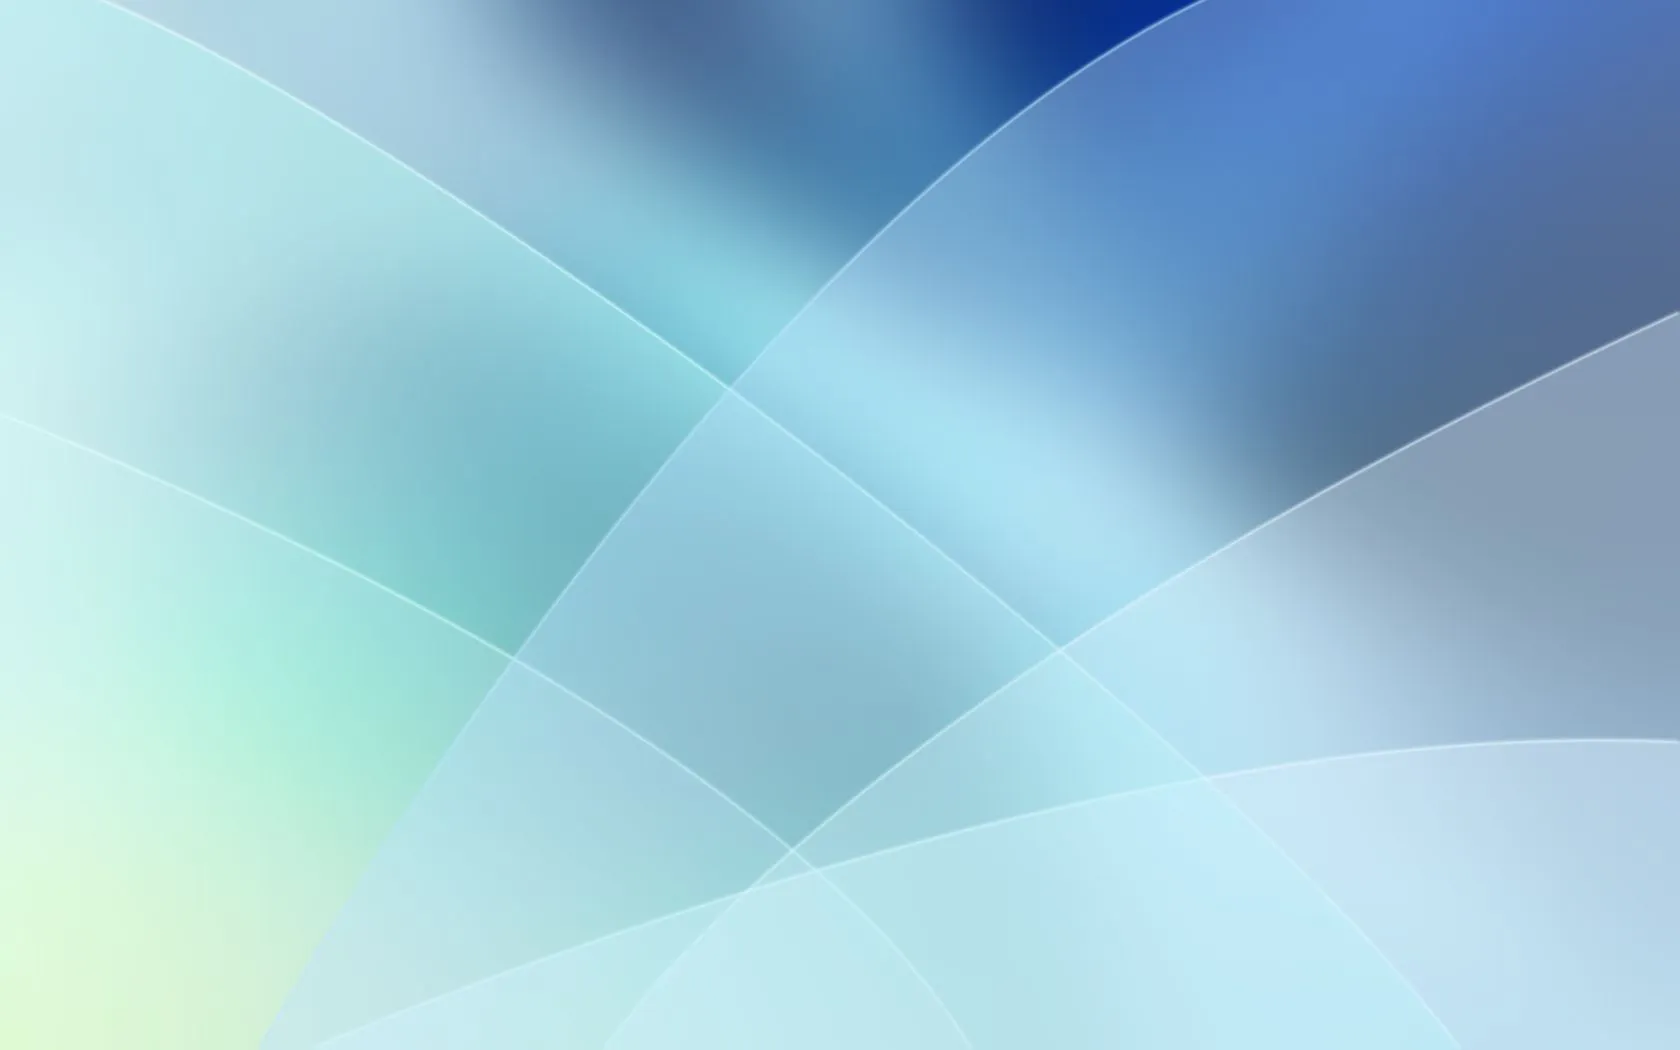 Fondos de pantalla abstractos de colores claros - Imagui